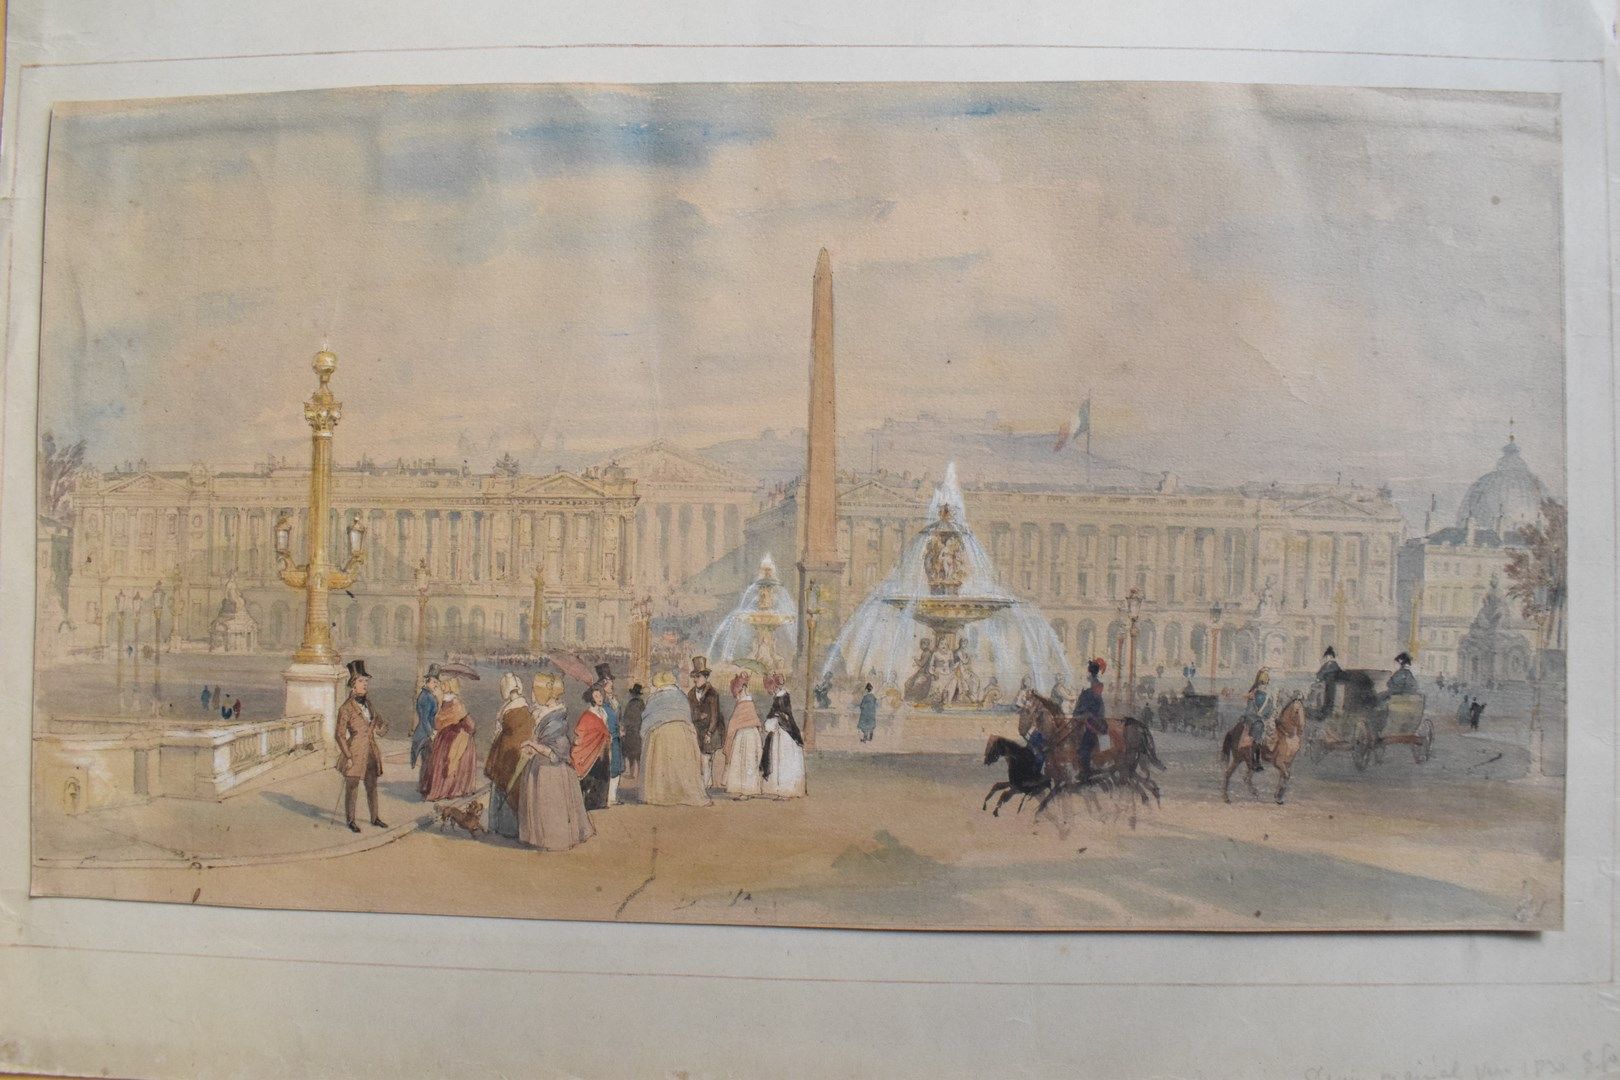 Null 无名氏 19世纪

巴黎协和广场

纸上水墨和水彩画

褪色，发黄，轻微污损

20.5 x 38 cm